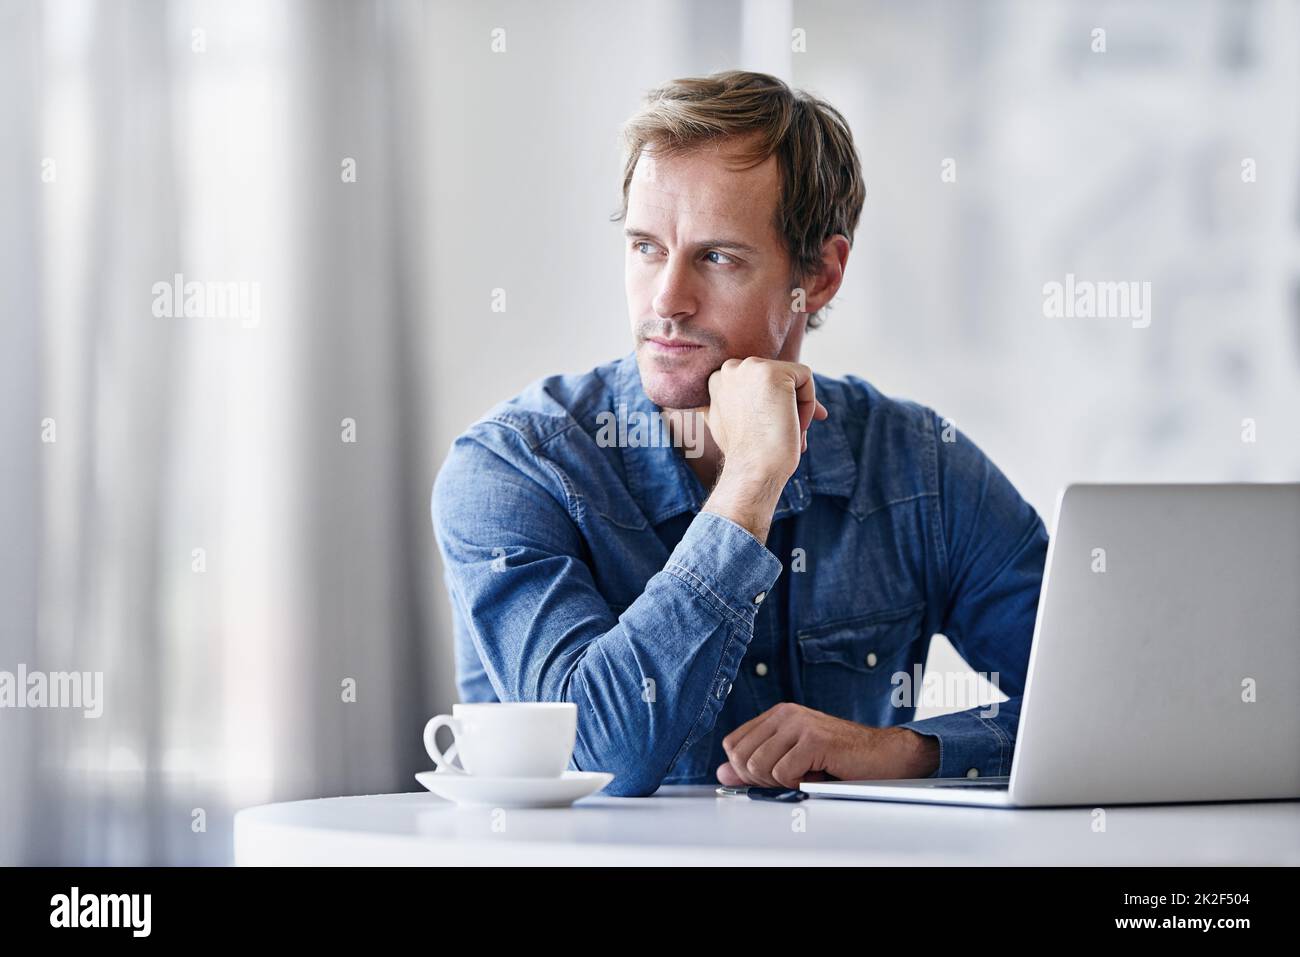 HES un homme d'idée. Photo d'un homme d'affaires mûr et réfléchi utilisant un ordinateur portable tout en étant assis à un bureau. Banque D'Images